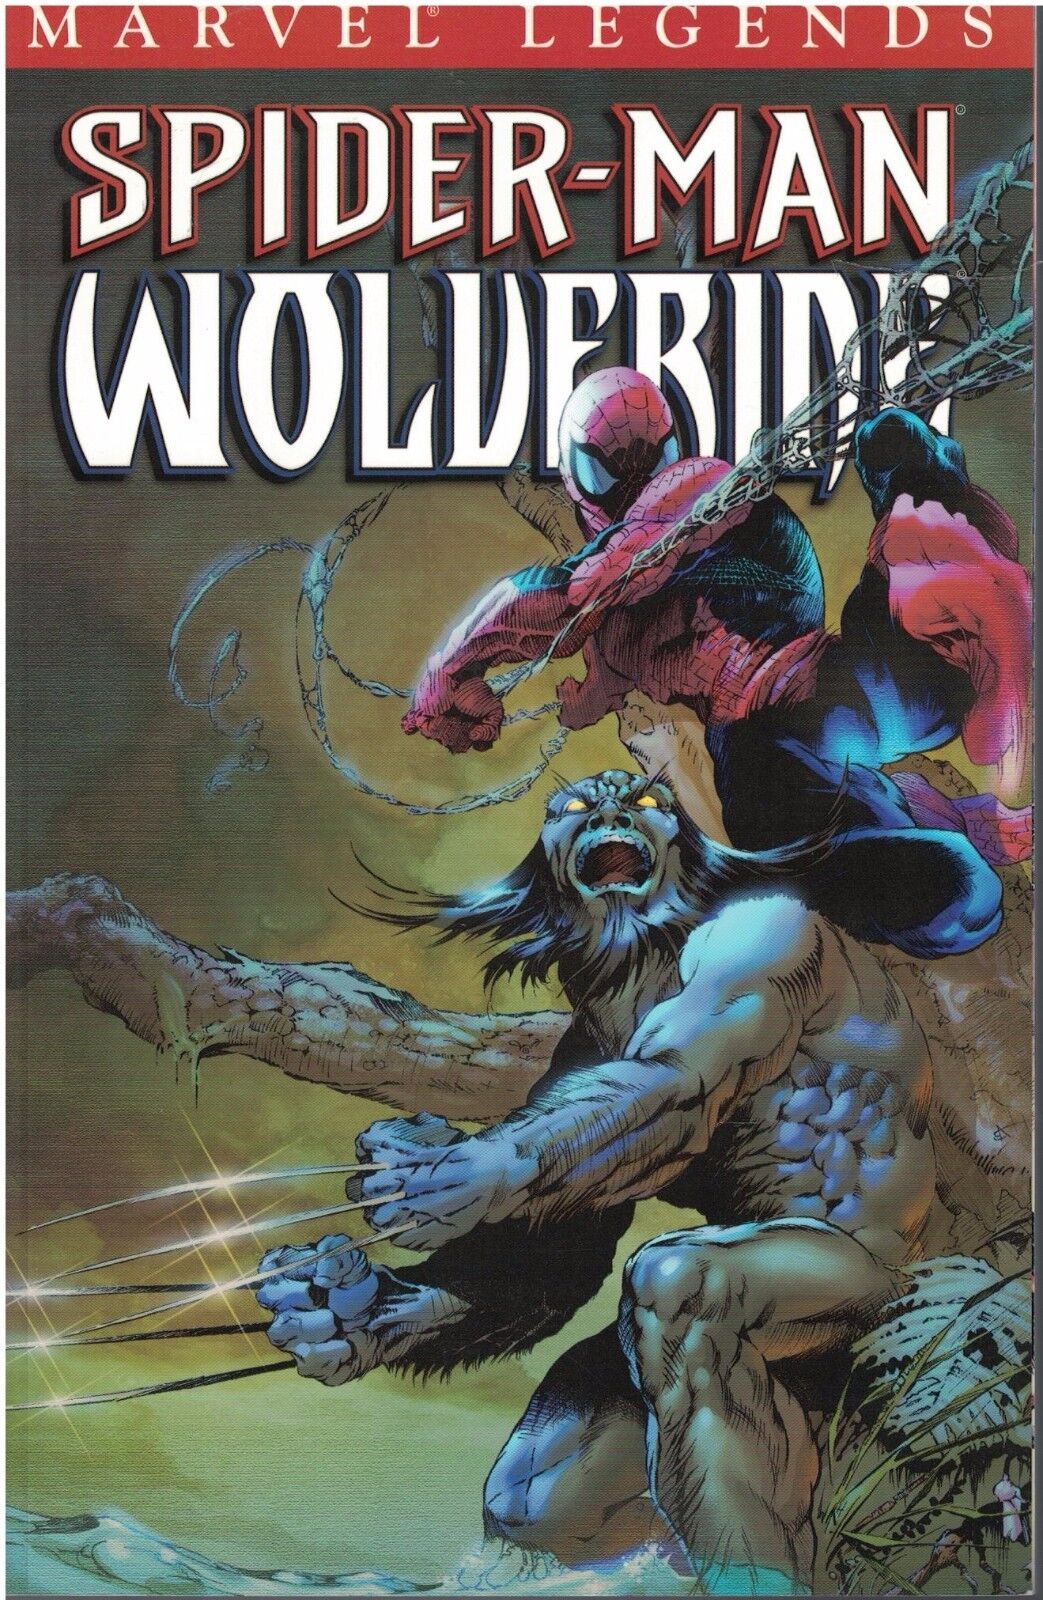 Spider-Man Legends Spider-Man & Wolverine Graphic Novel Volume 4